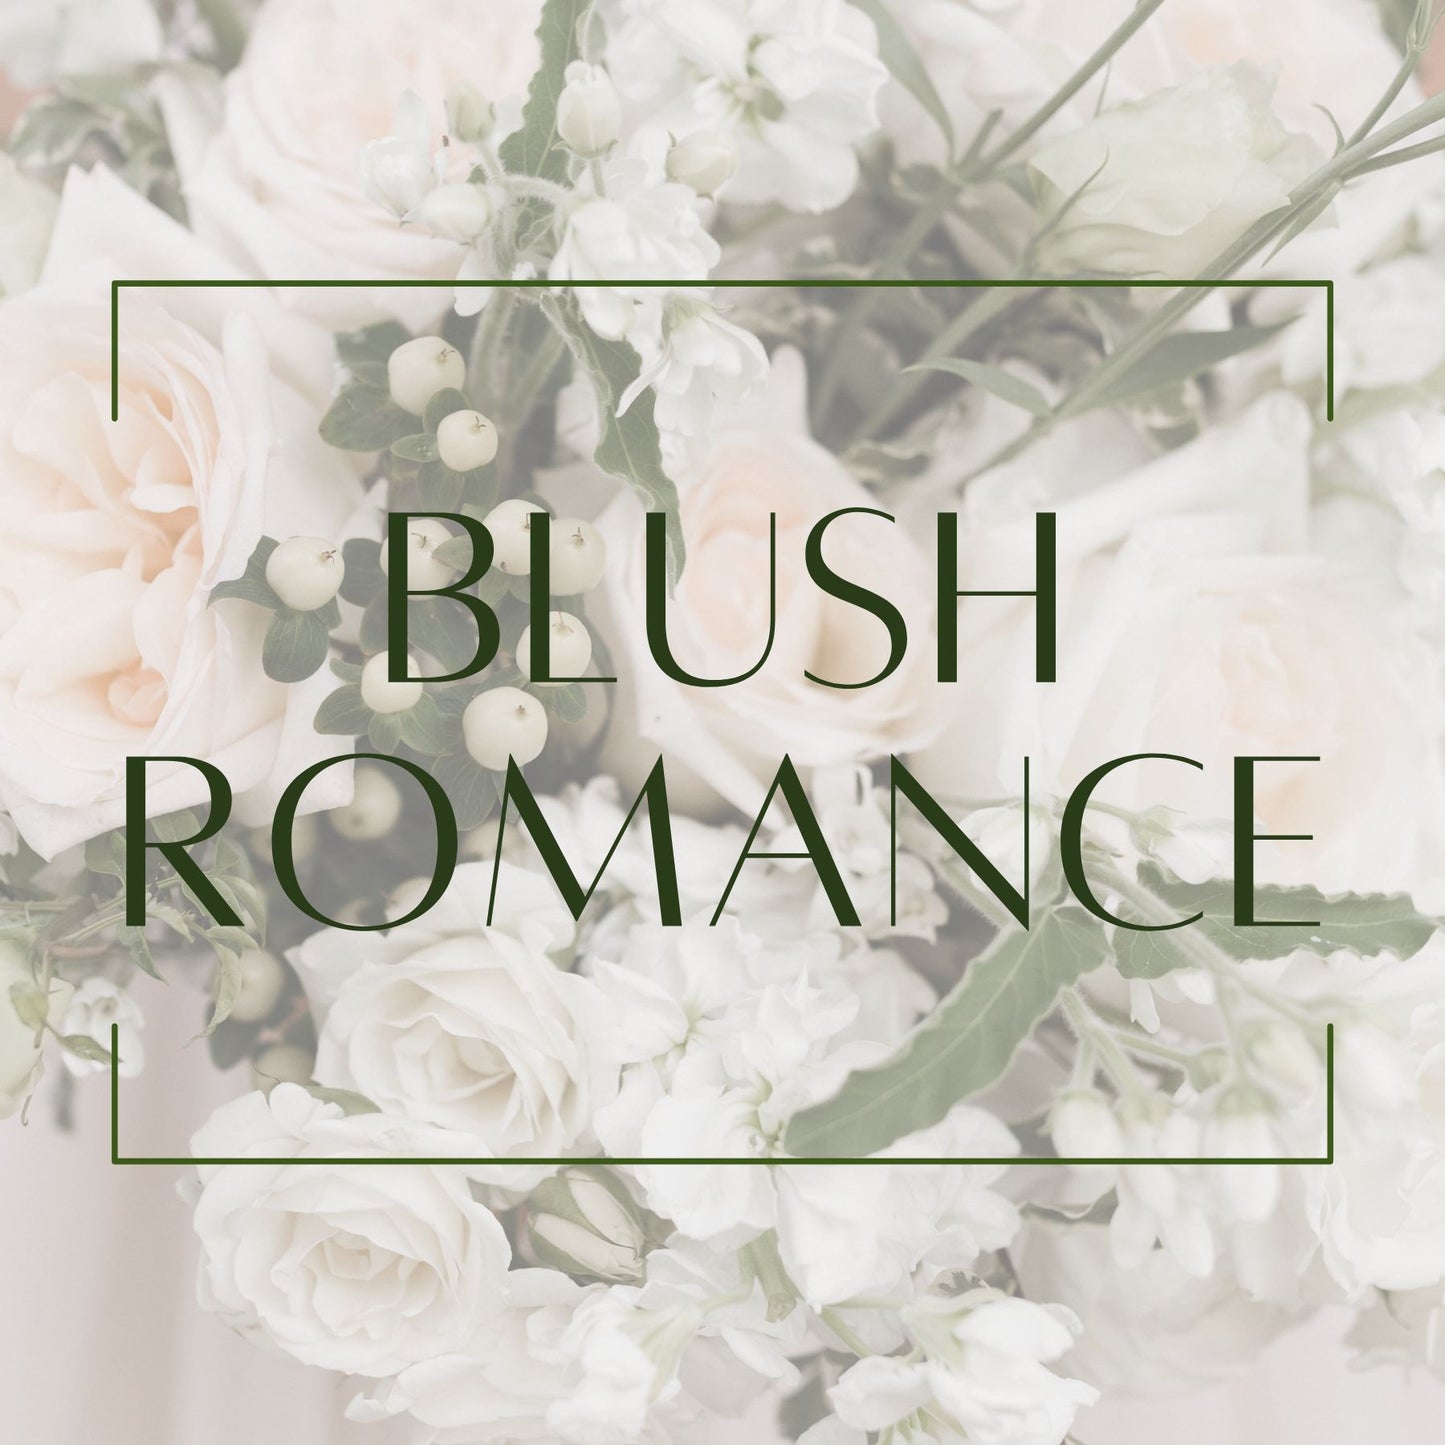 Blush Romance - Arch Arrangements